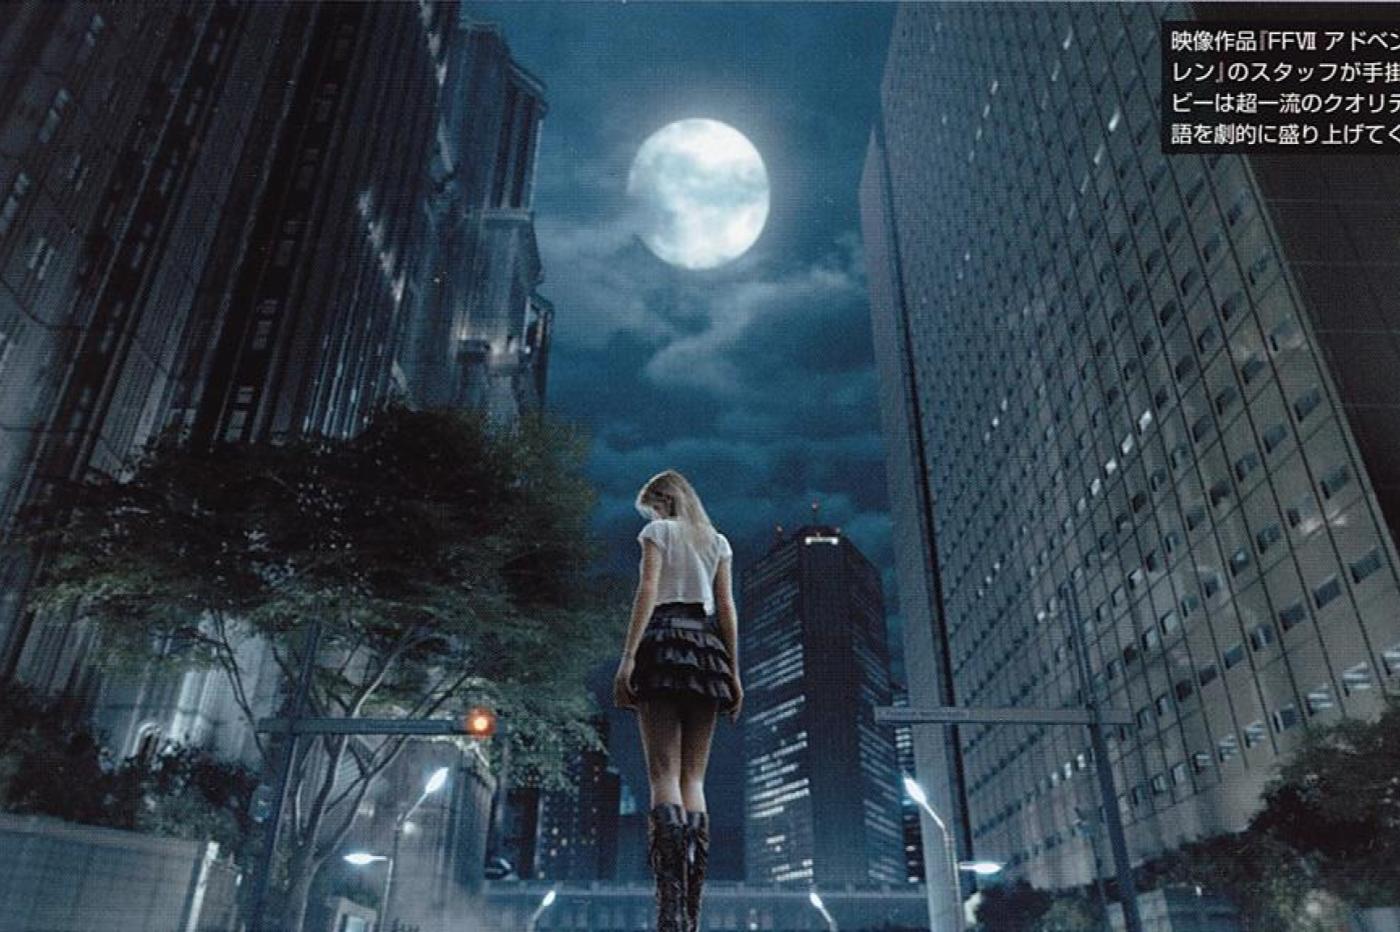 Personnage féminin de Final Fantasy Versus XIII au milieu d'une ville moderne de nuit